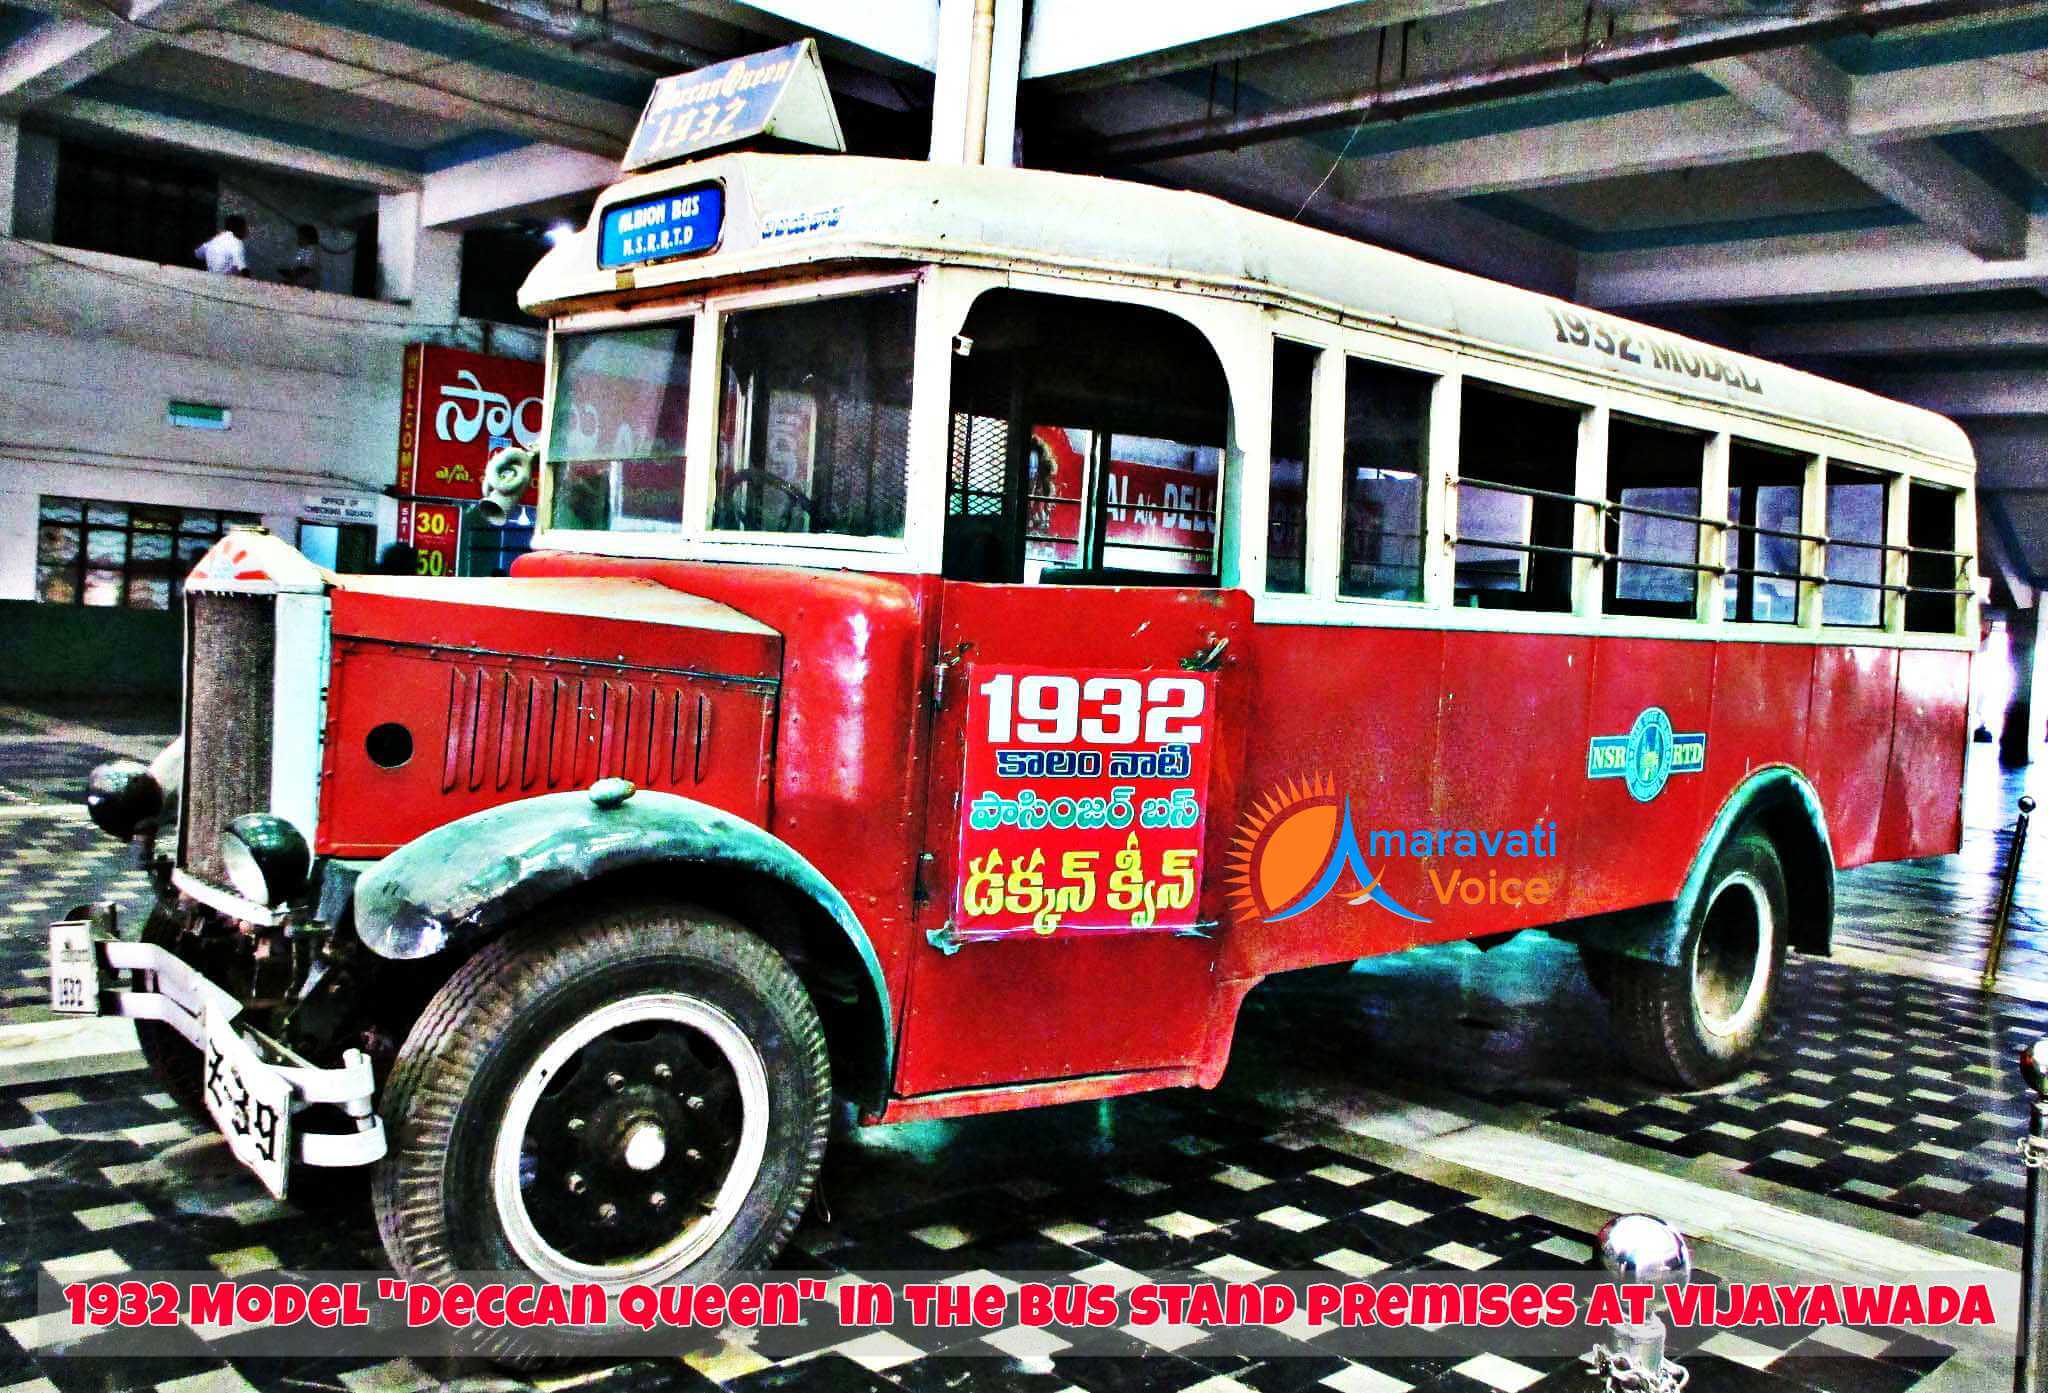 1932 Model Deccan Queen Model Bus in Vijayawada Bus Stand